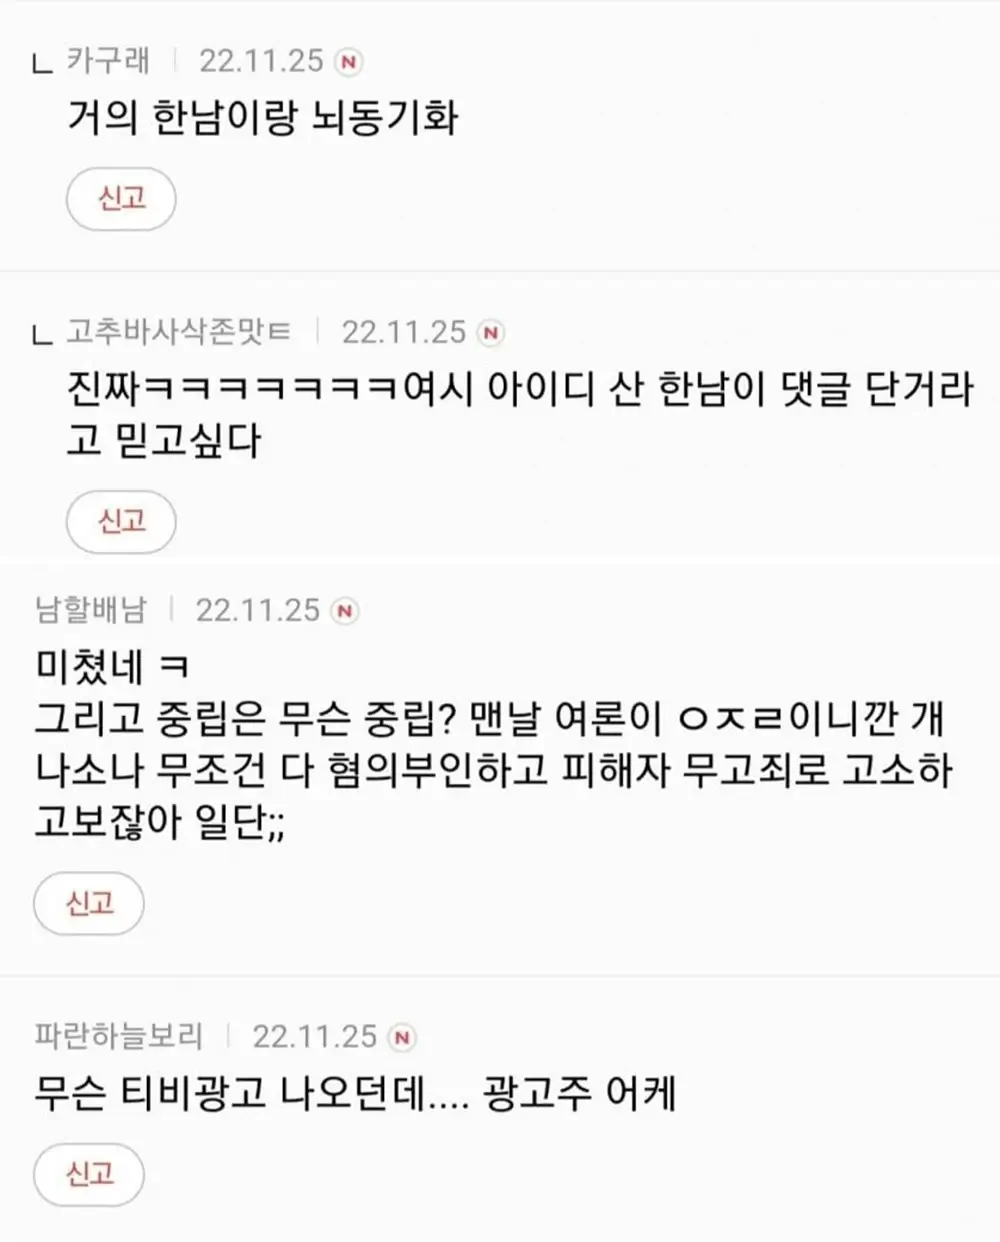 오영수 강제추행 혐의 언냐들 반응 4